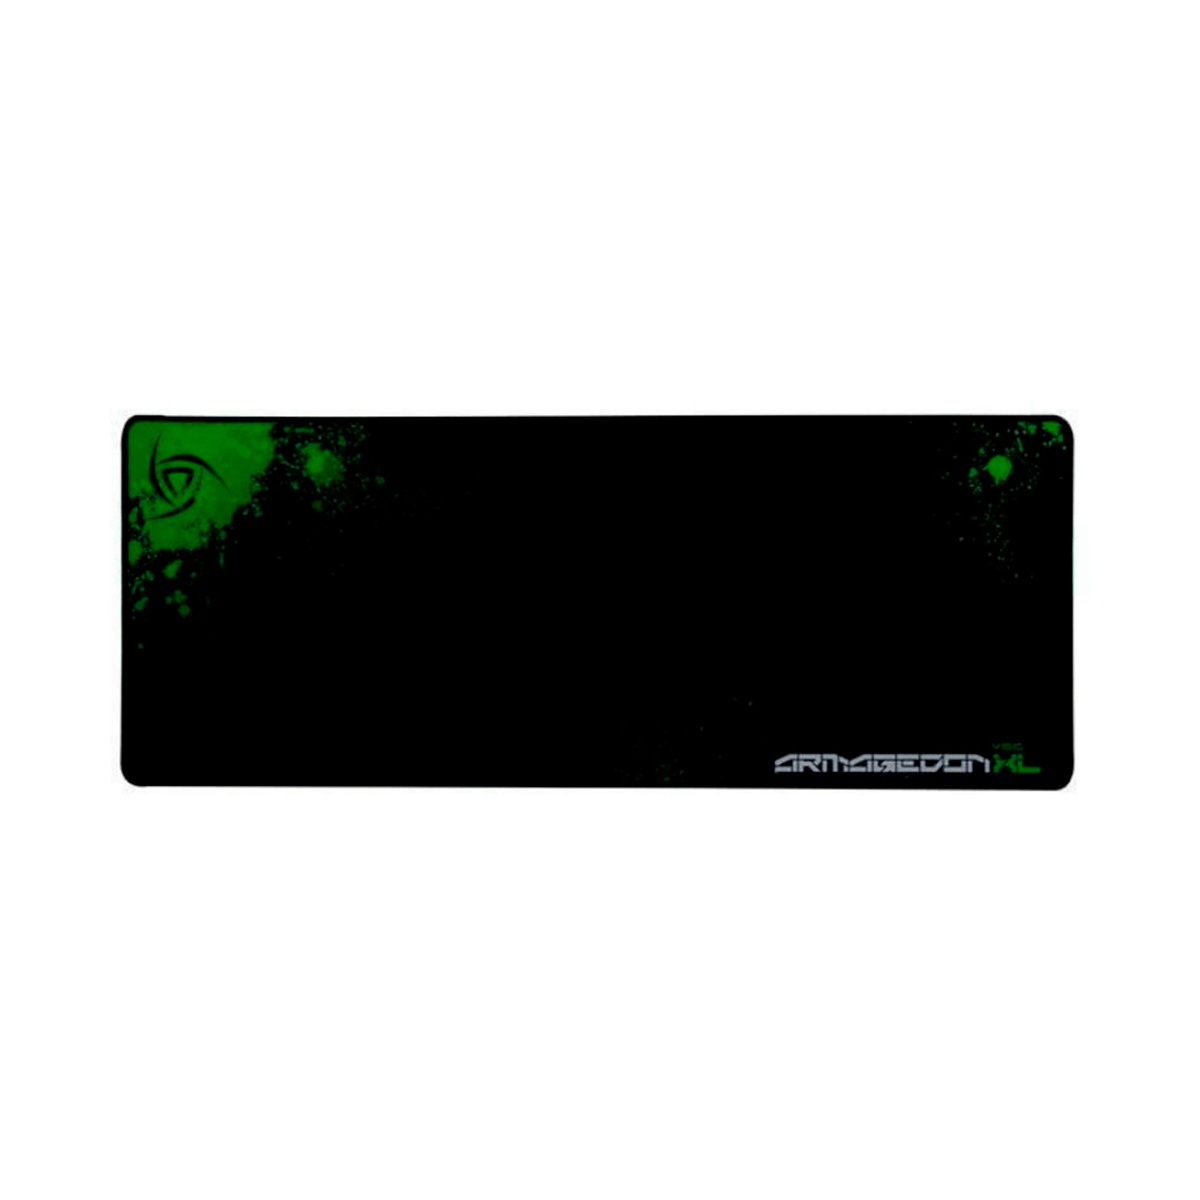 VSG Mousepad ARMAGEDON XL, 78 x 40cm, Grosor 3mm, Negro/Verde - GG GAMER STORE